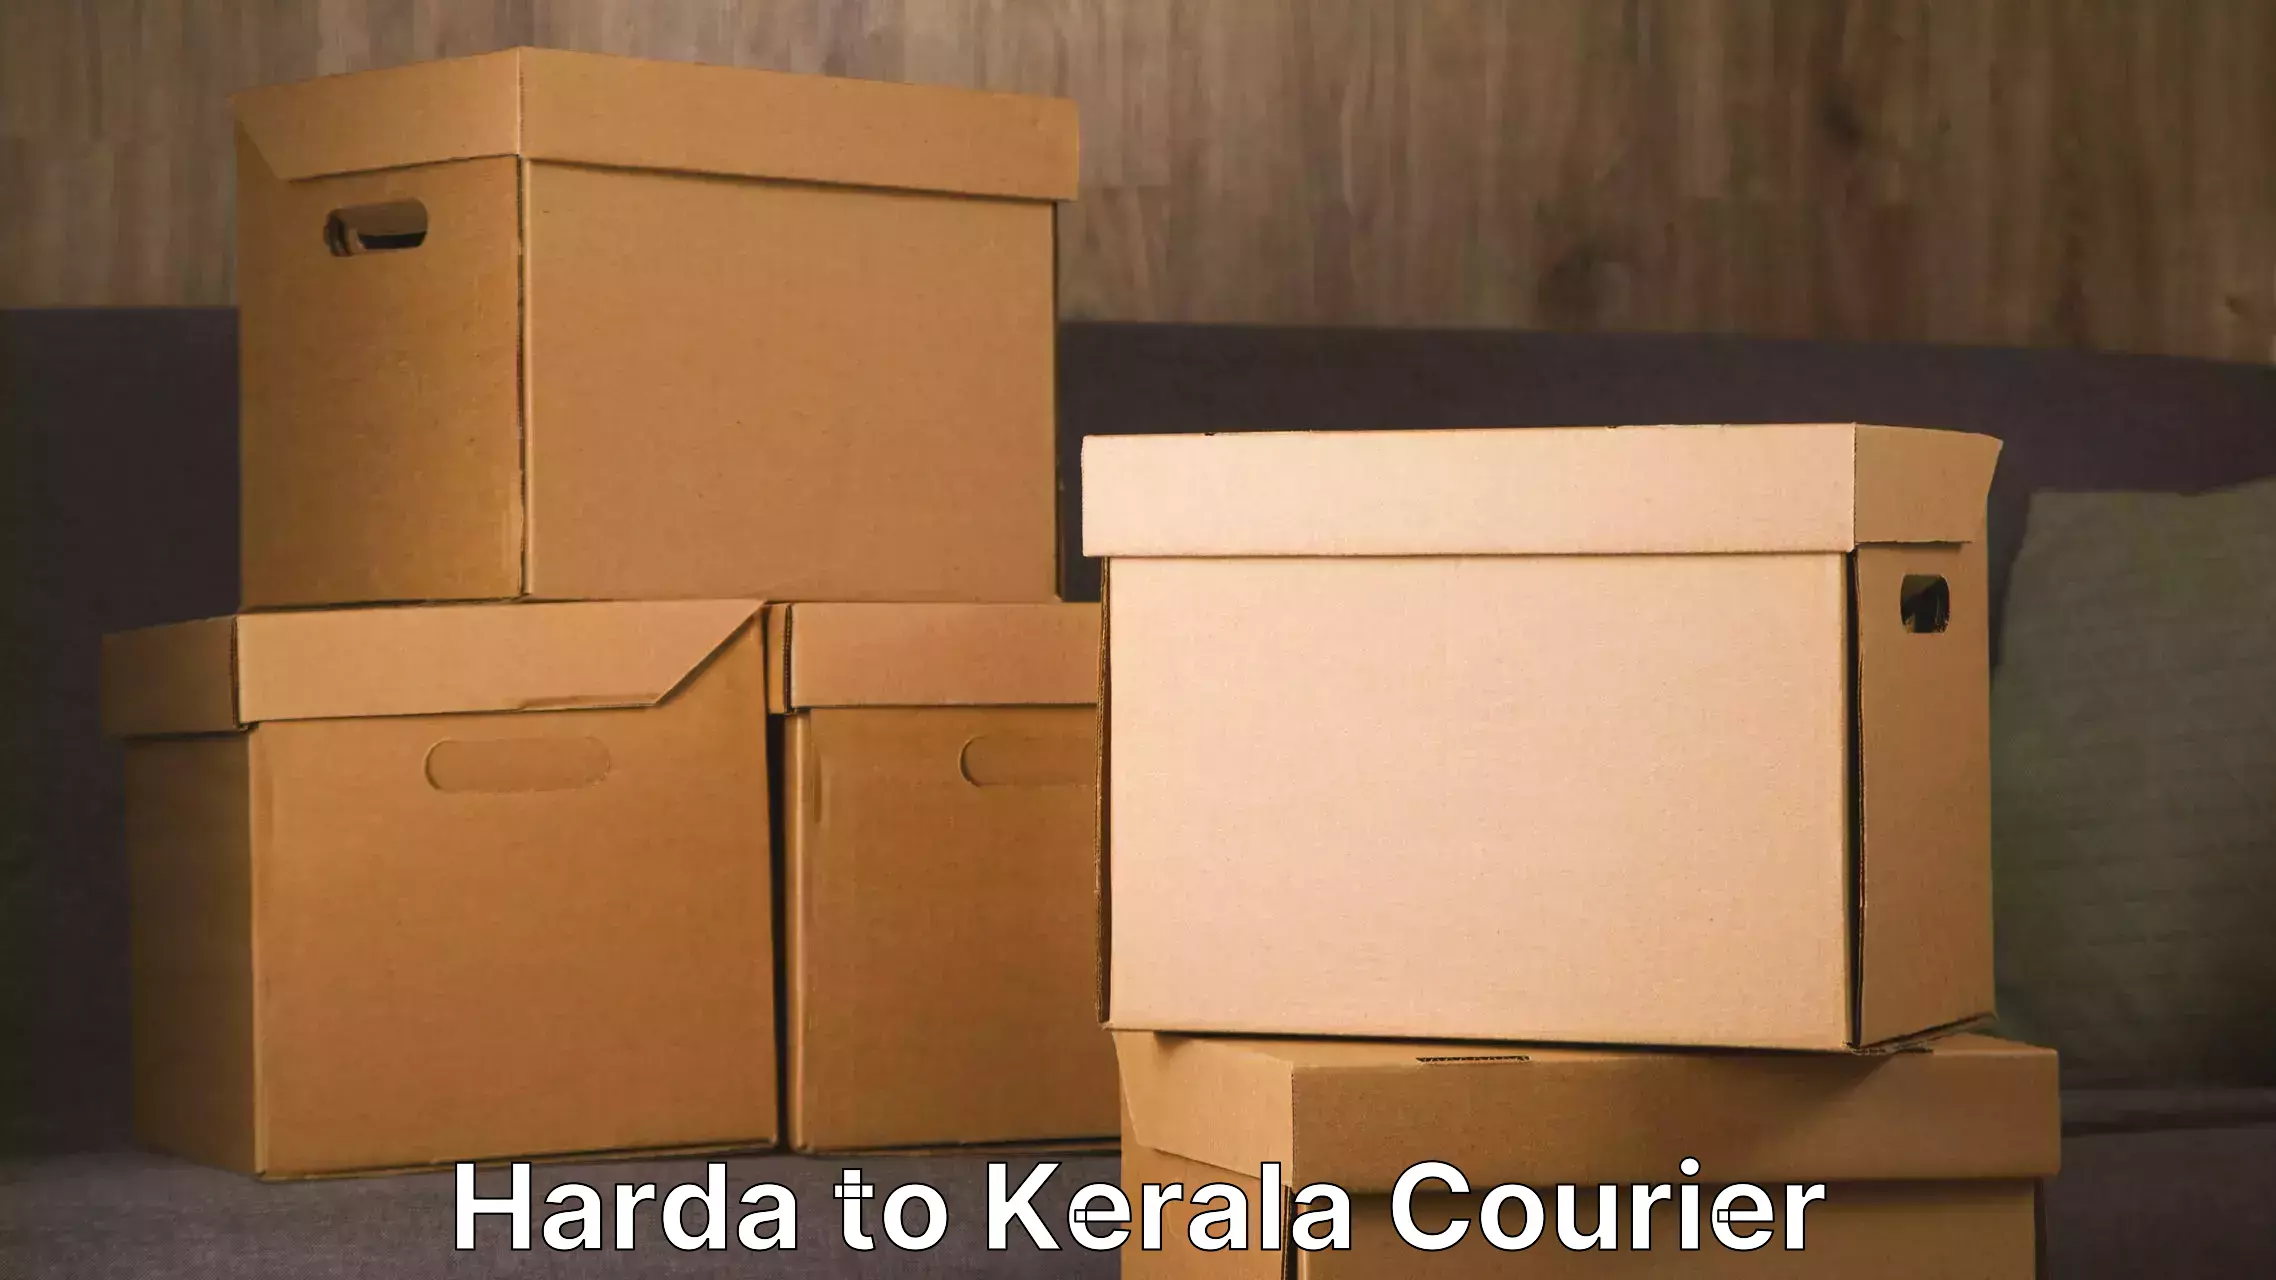 Specialized moving company Harda to Kerala